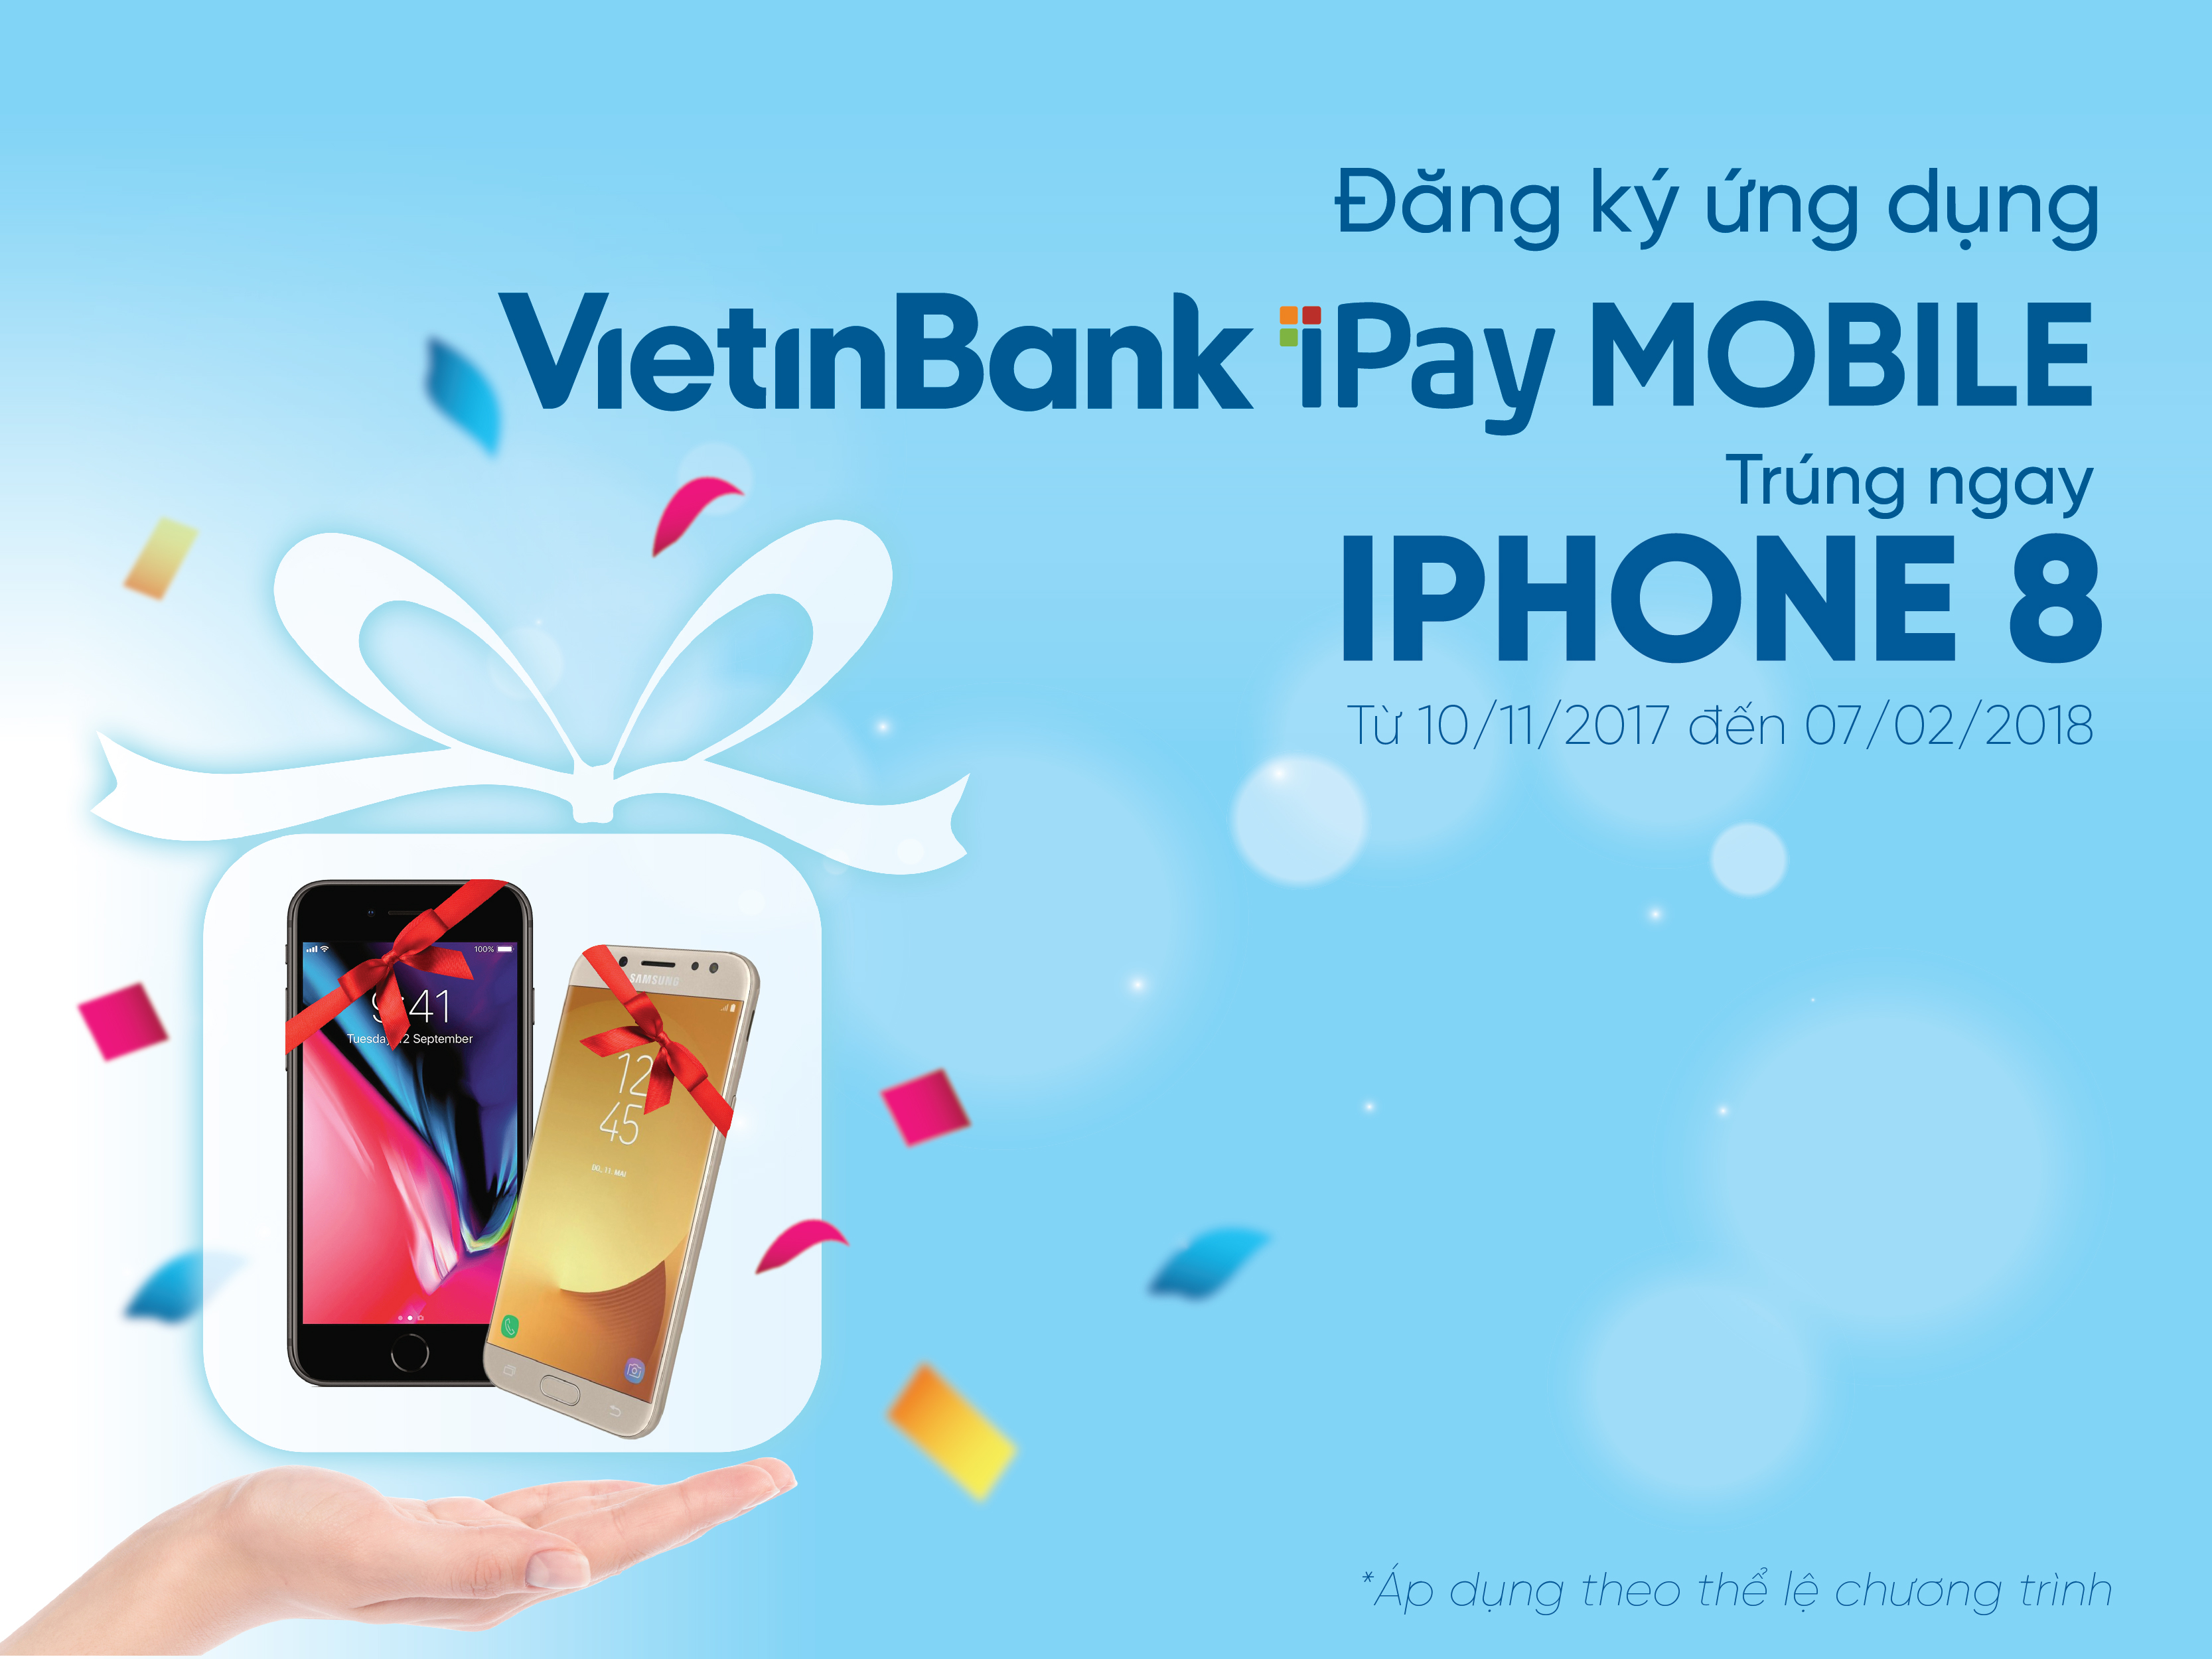 Tai_ung_dung_VietinBank_iPay_Mobile_trung_iPhone_8